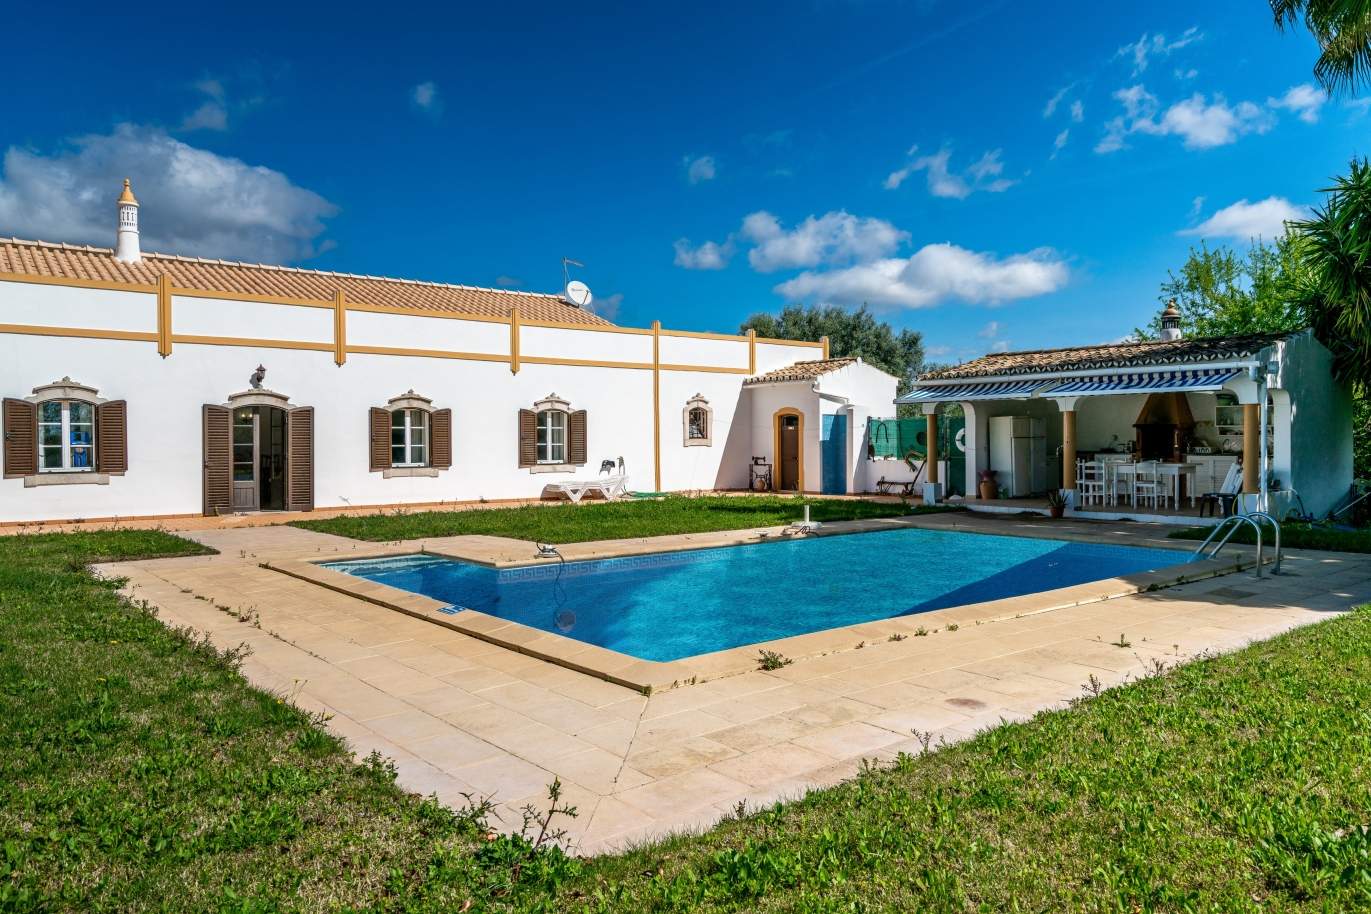 Venda de moradia com piscina em Boliqueime, Loulé, Algarve_110287